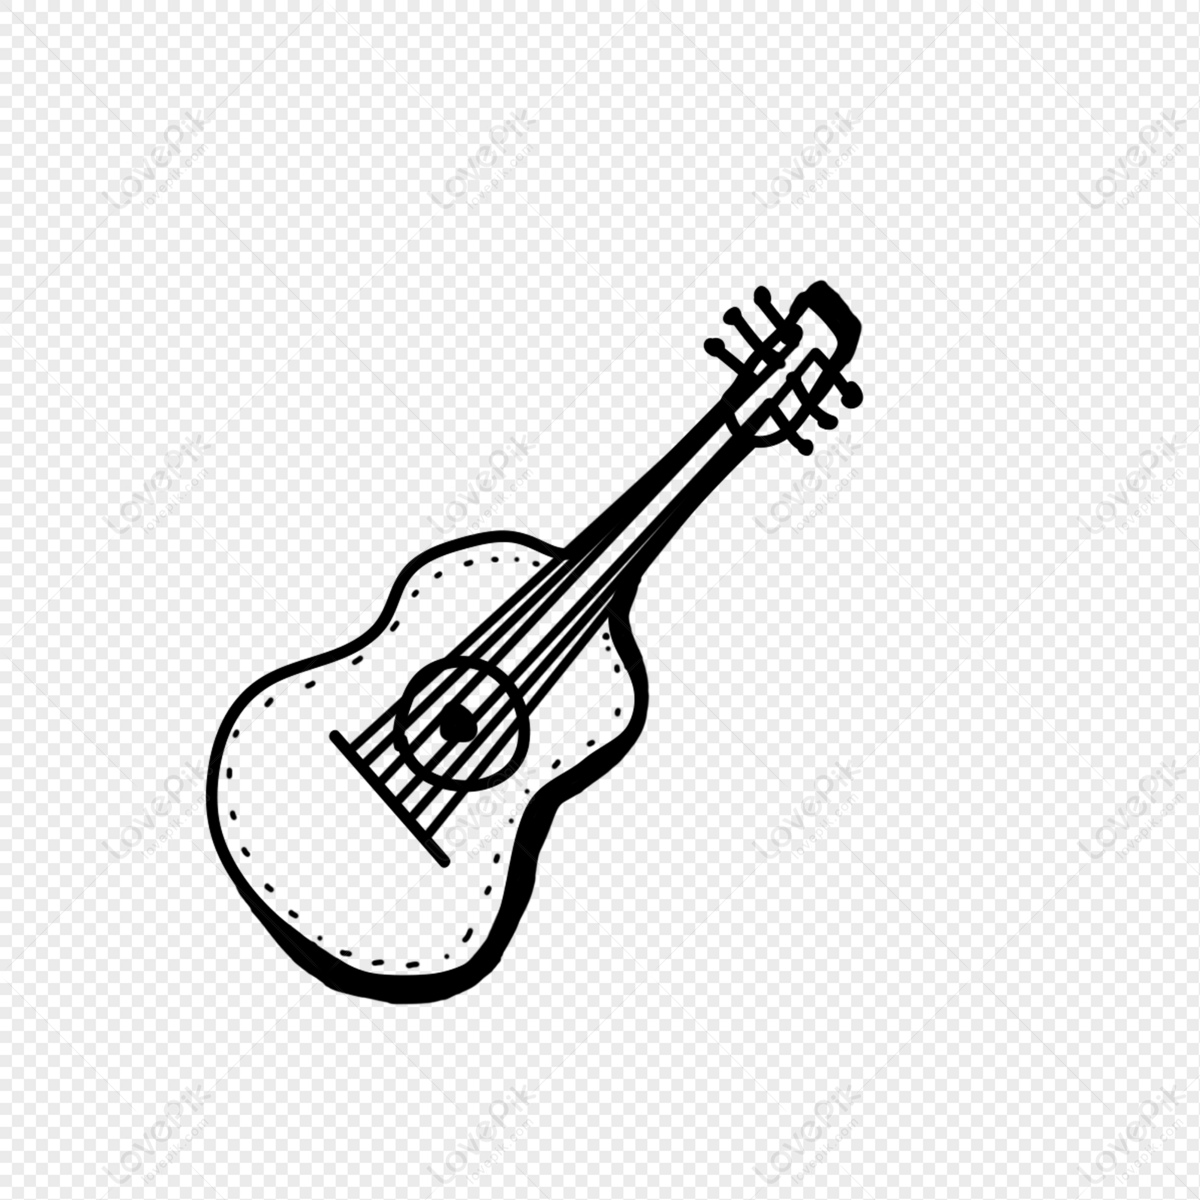 Broom guitar logo design graphic symbol icon Vector Image